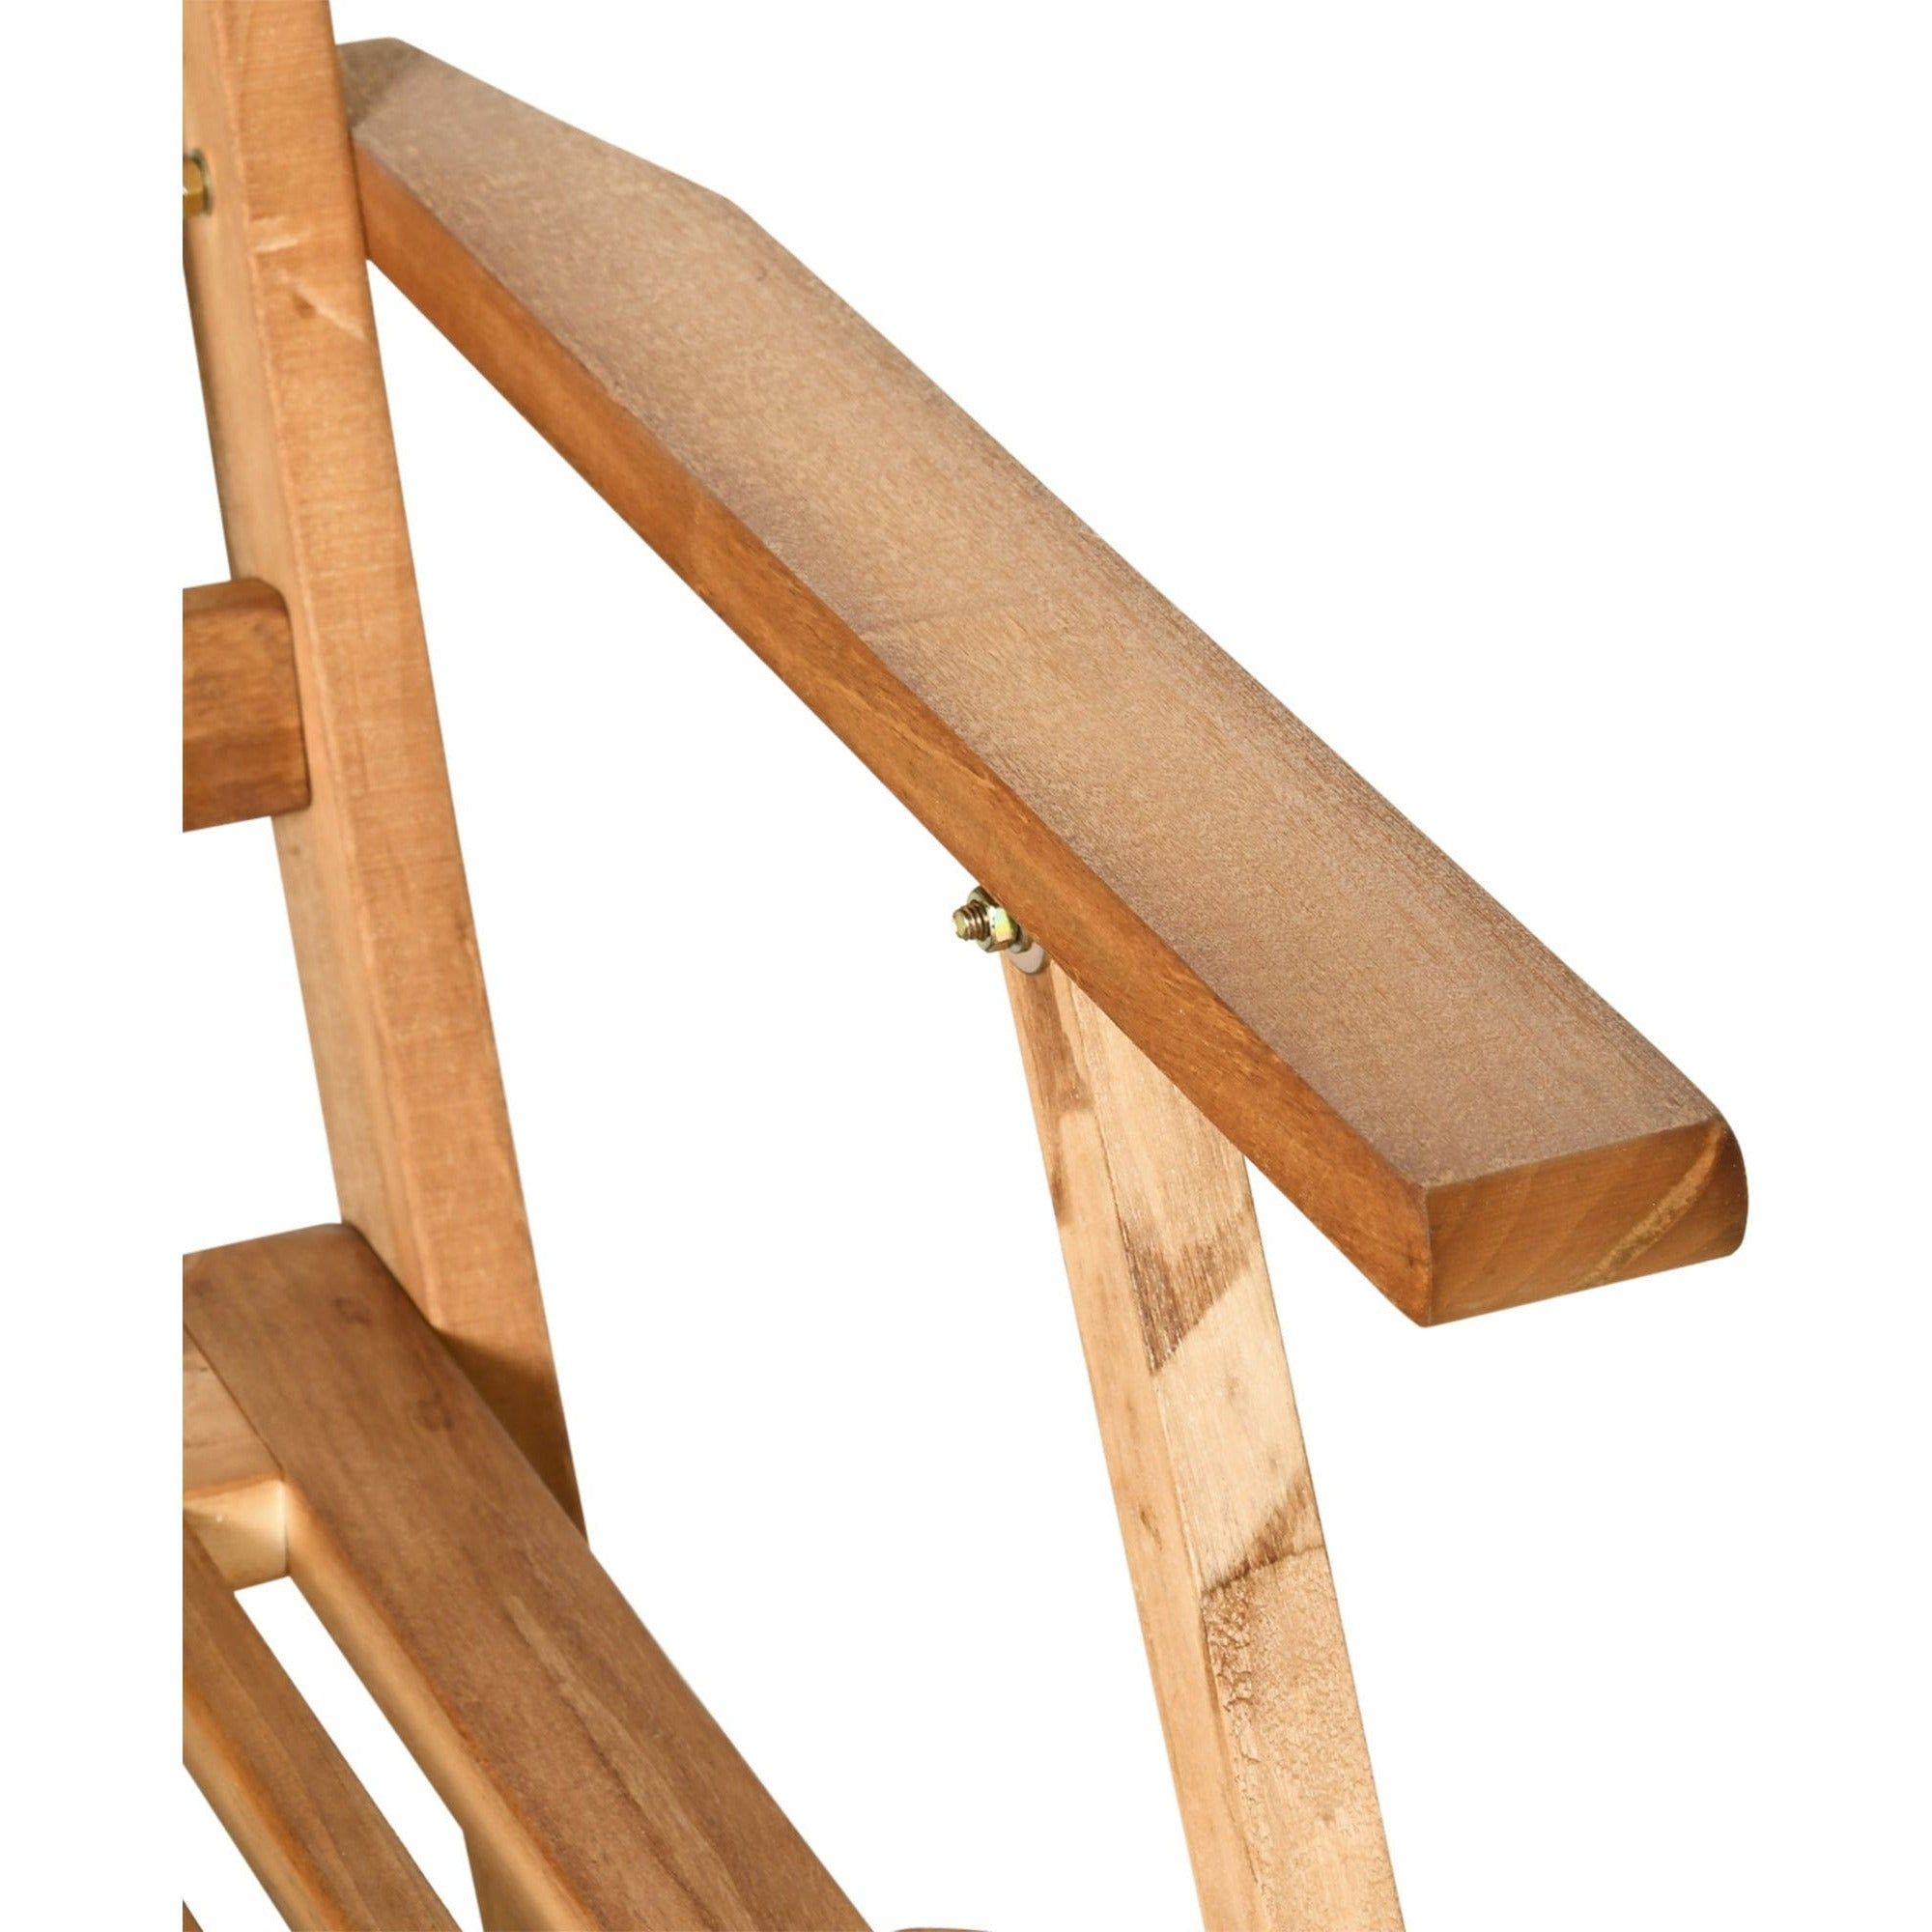 Teak wood folding table